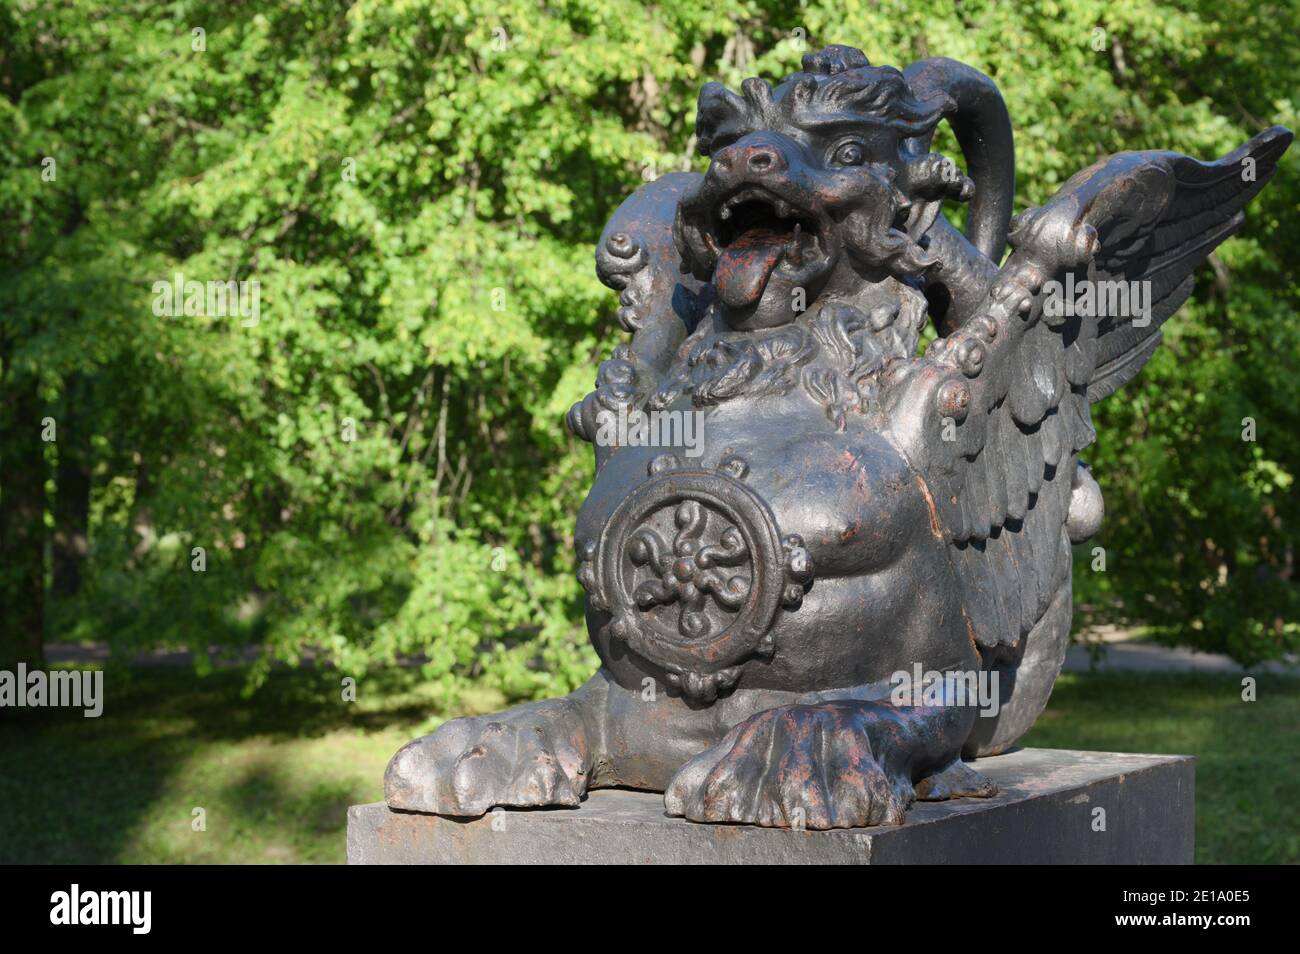 Statua di zinco di un drago al Ponte del Drago nel parco Alexander, Museo di Stato-Riserva Tsarskoe Selo, Pushkin vicino a San Pietroburgo, Russia Foto Stock